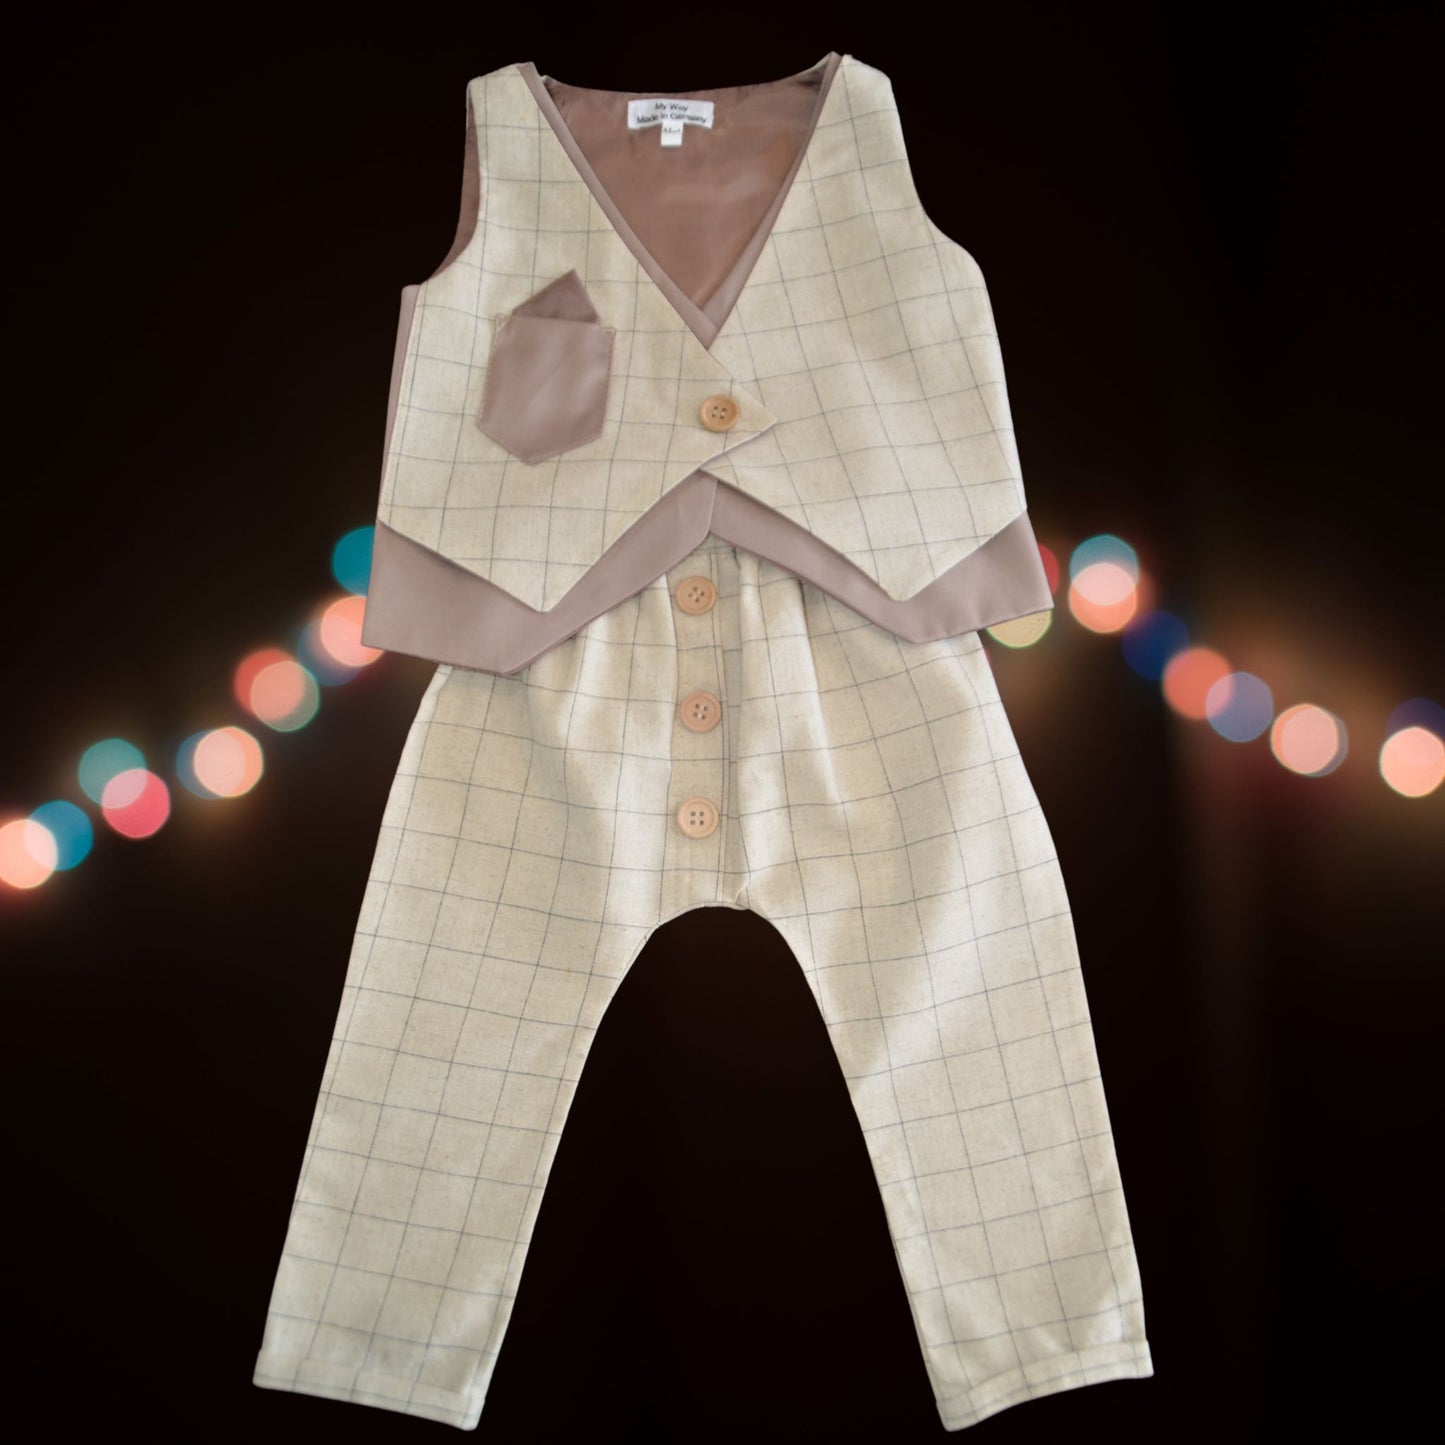 Hochwertige Kinderanzüge von My Way D&A Beige Kinder-Anzüge online kaufen Anzug für Jungen mit Weste- Beige zu günstigen Preisen